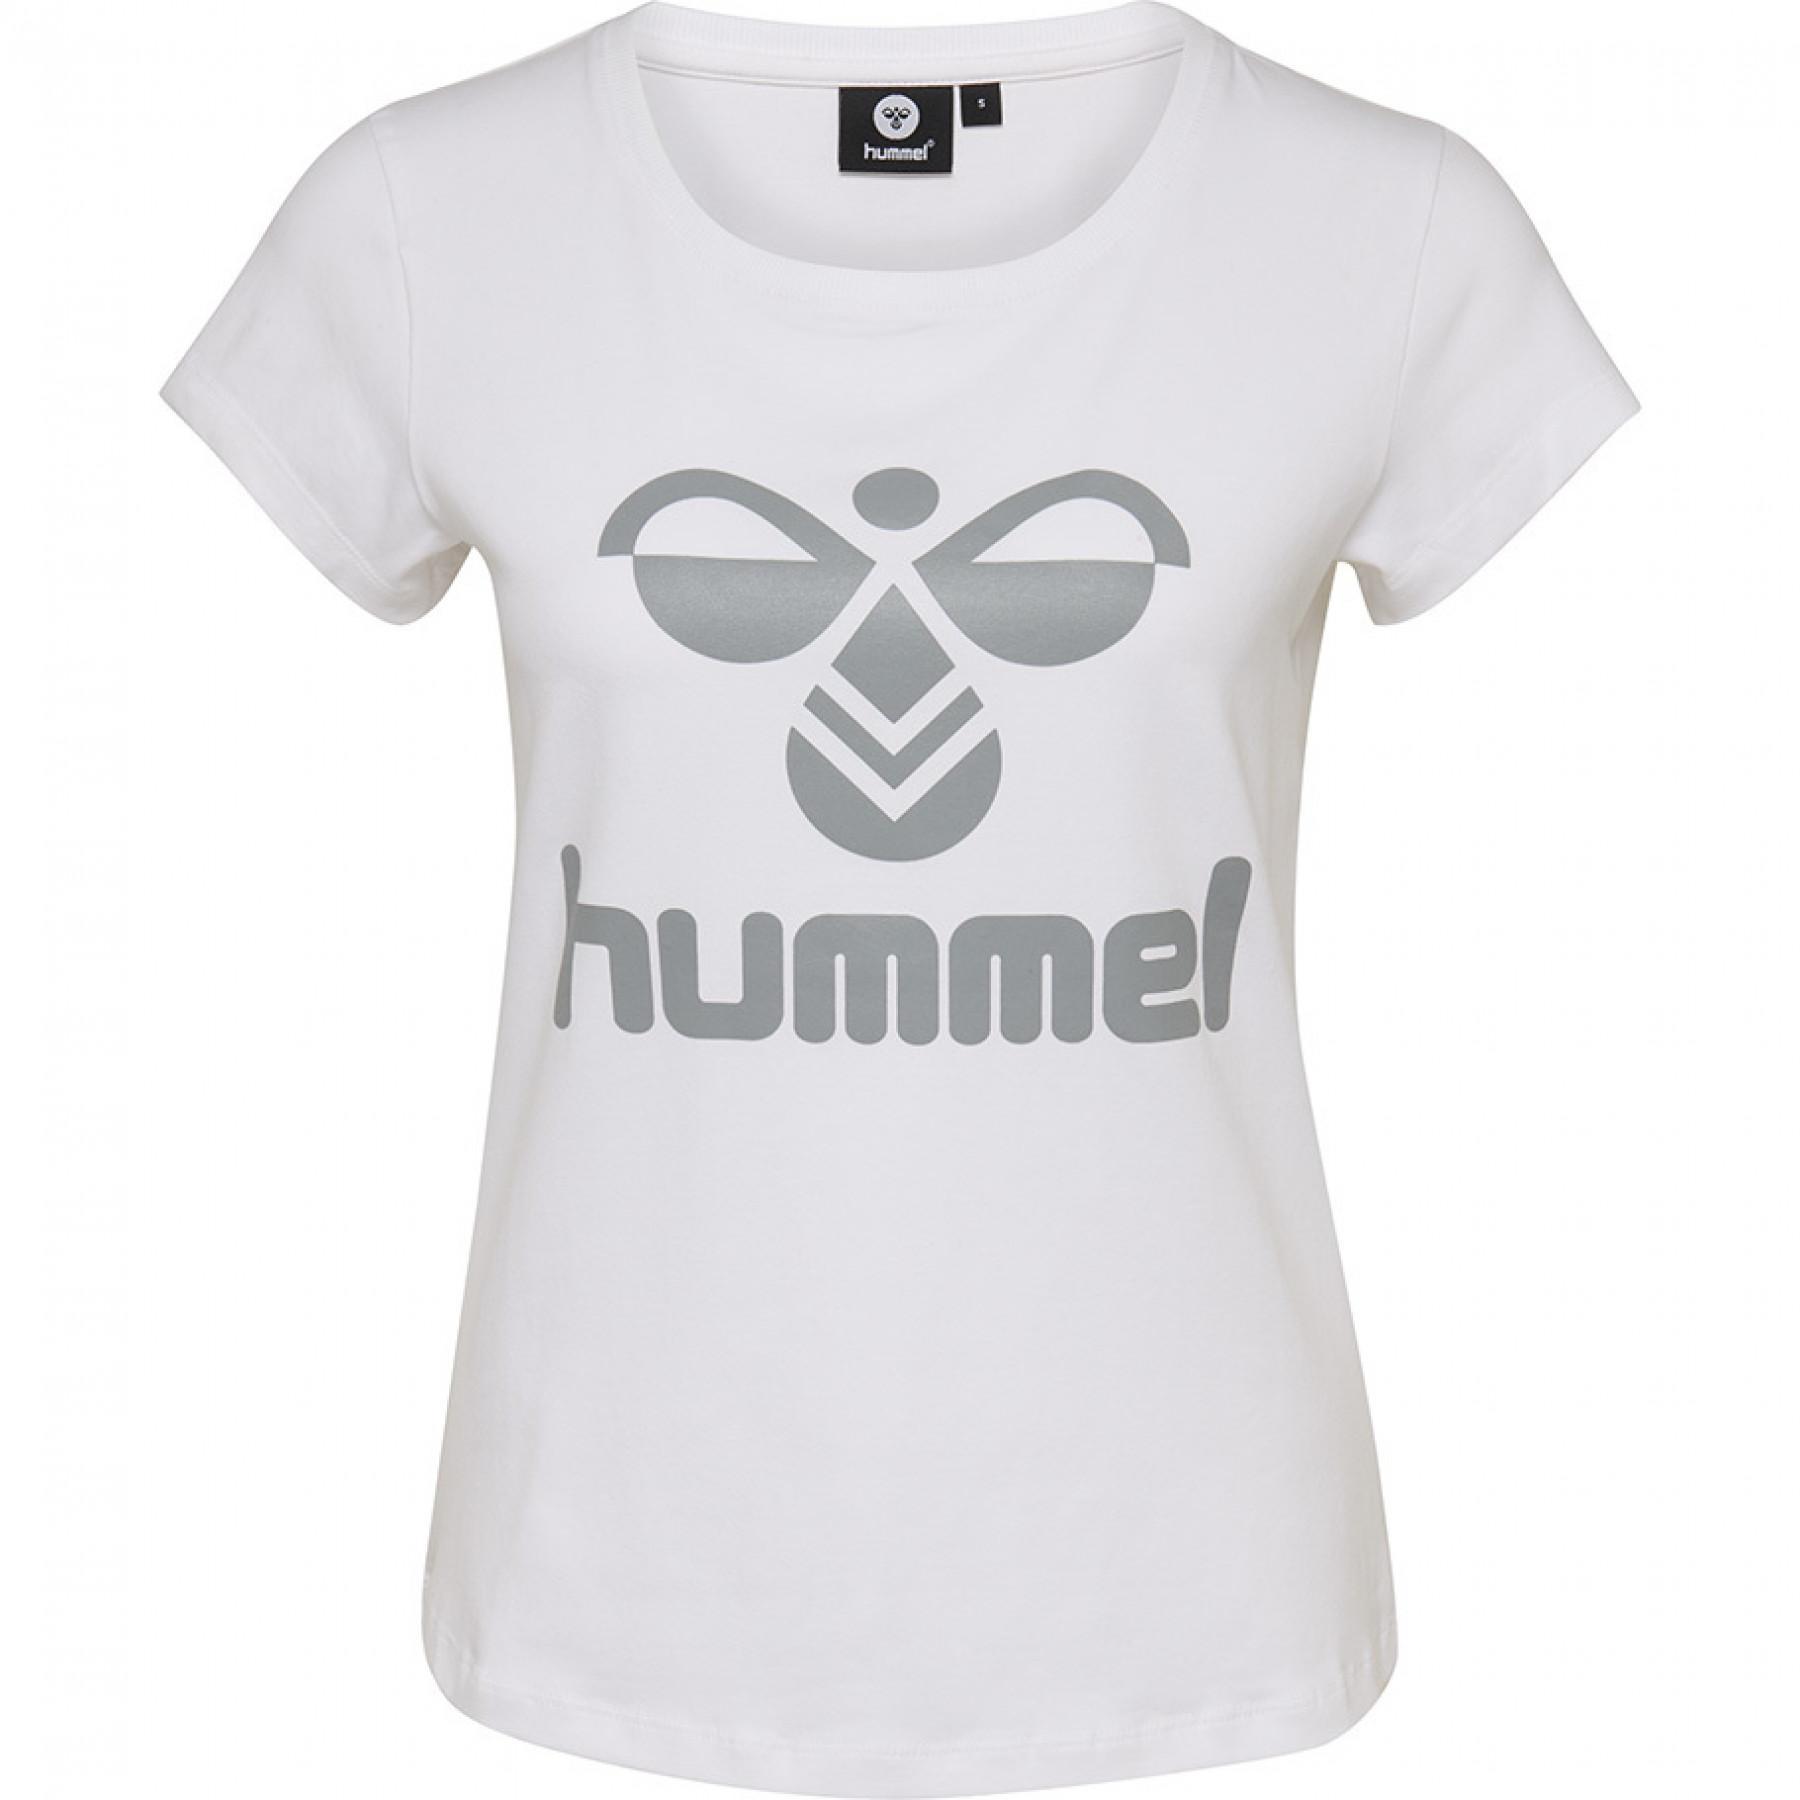 Koszulka damska Hummel jane white grey